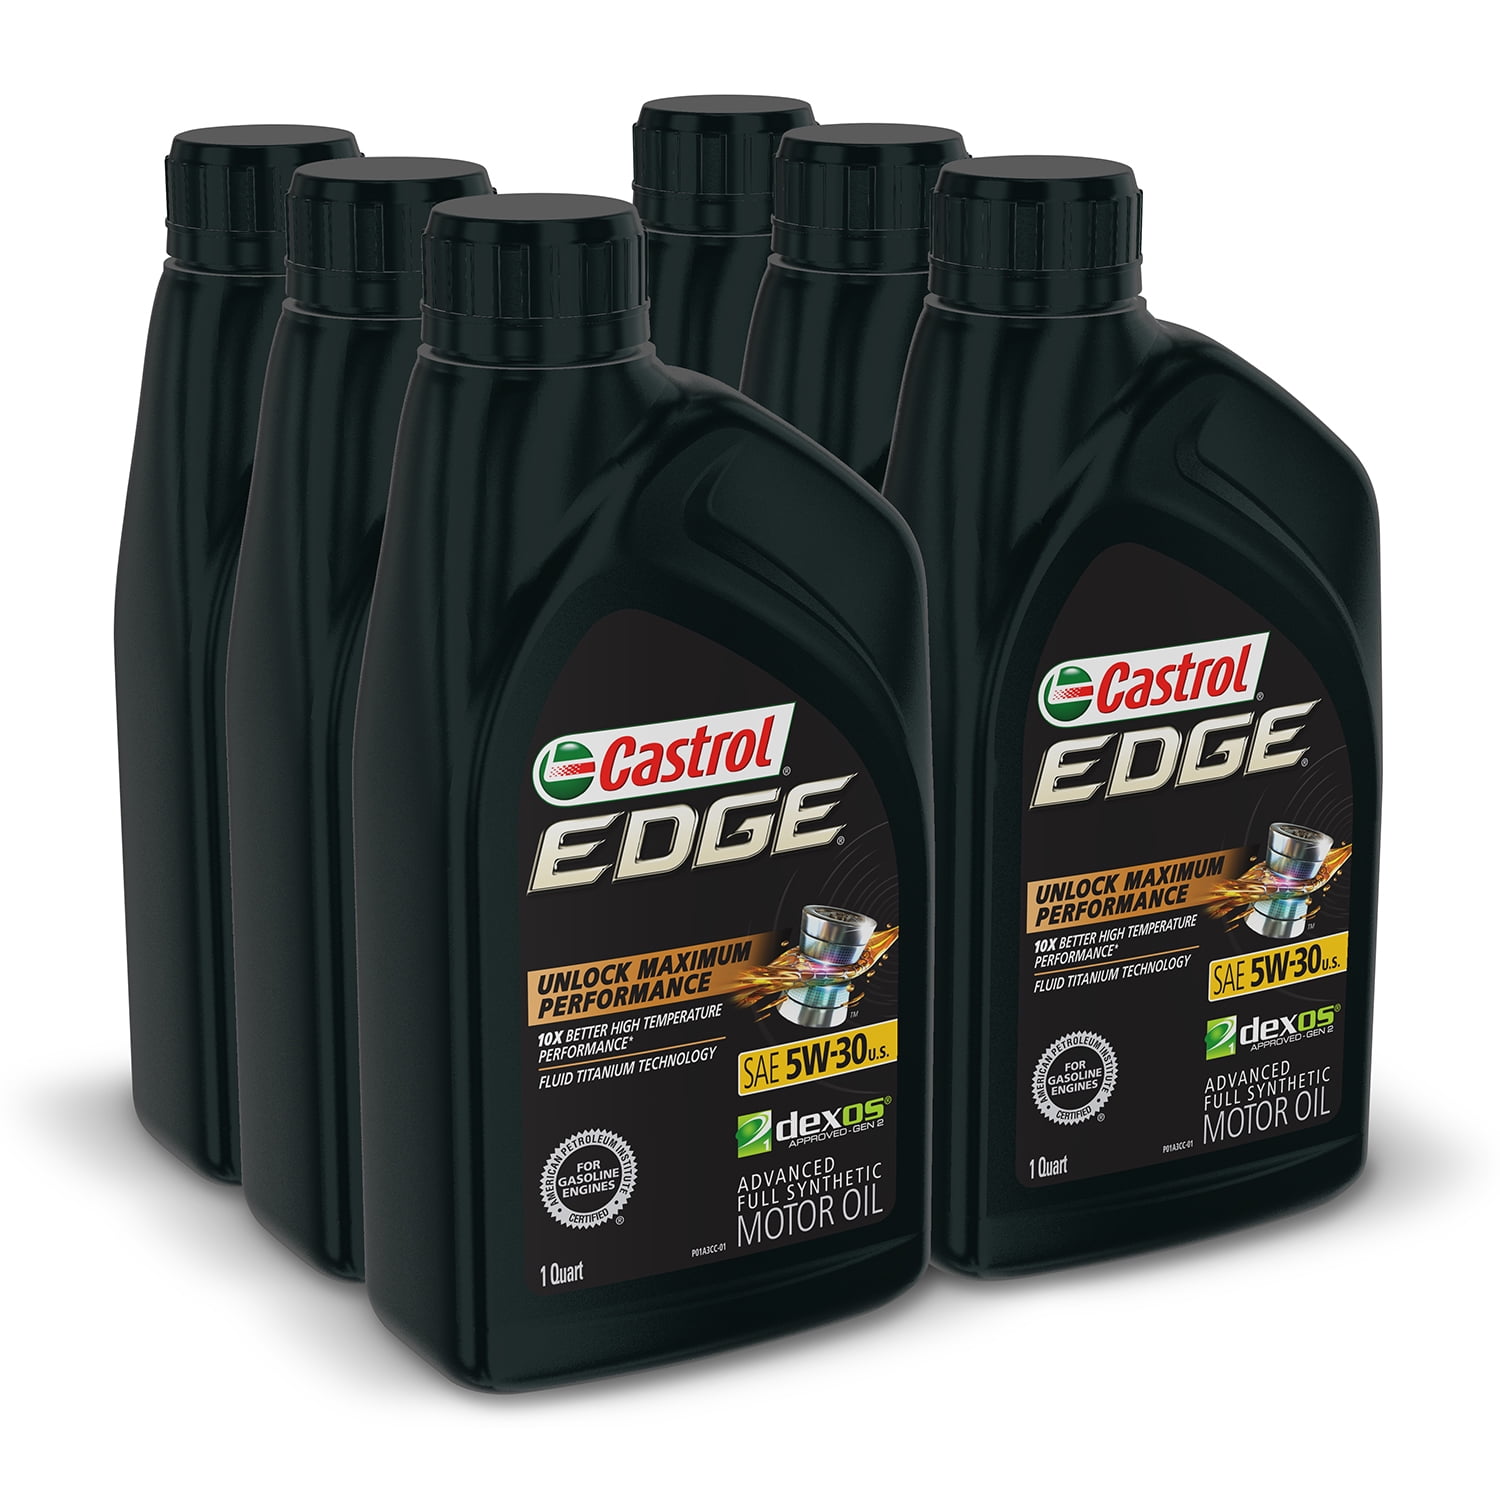 Castrol Edge 5W-30 K Advanced Full Synthetic Motor Oil, 1 Quart